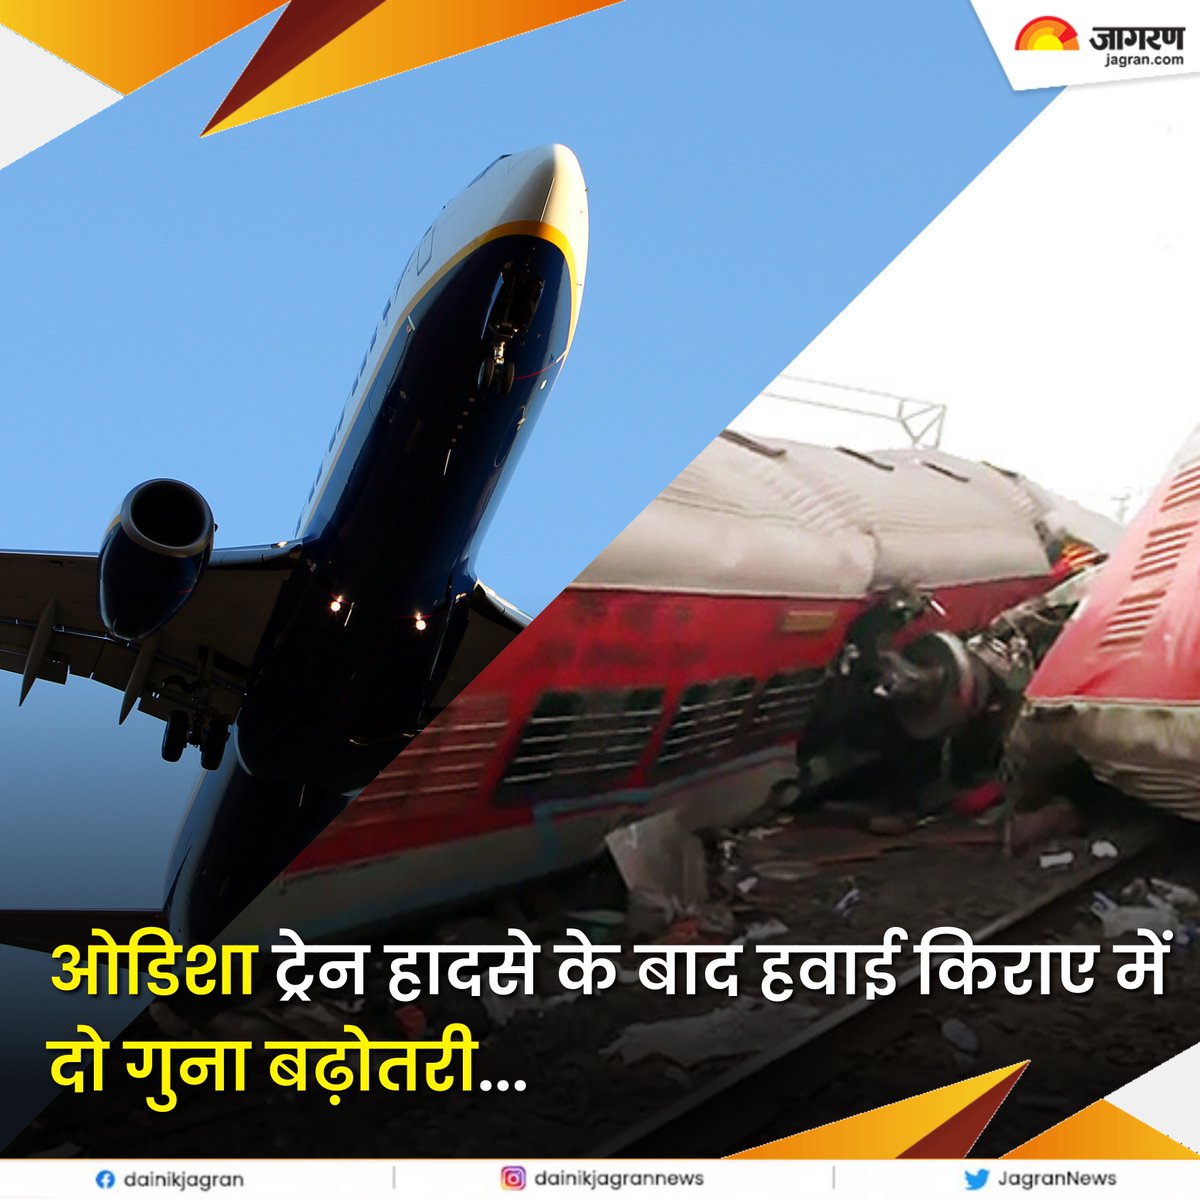 ओडिशा ट्रेन हादसे के बाद हवाई किराए में दो गुना बढ़ोतरी, 20 हजार में मिल रही कोलकाता से चेन्नई की टिकट

पूरी ख़बर - surl.li/hqqle

#OdishaRailTragedy #Odisha #FlightTickets #OdishaTrainAccident